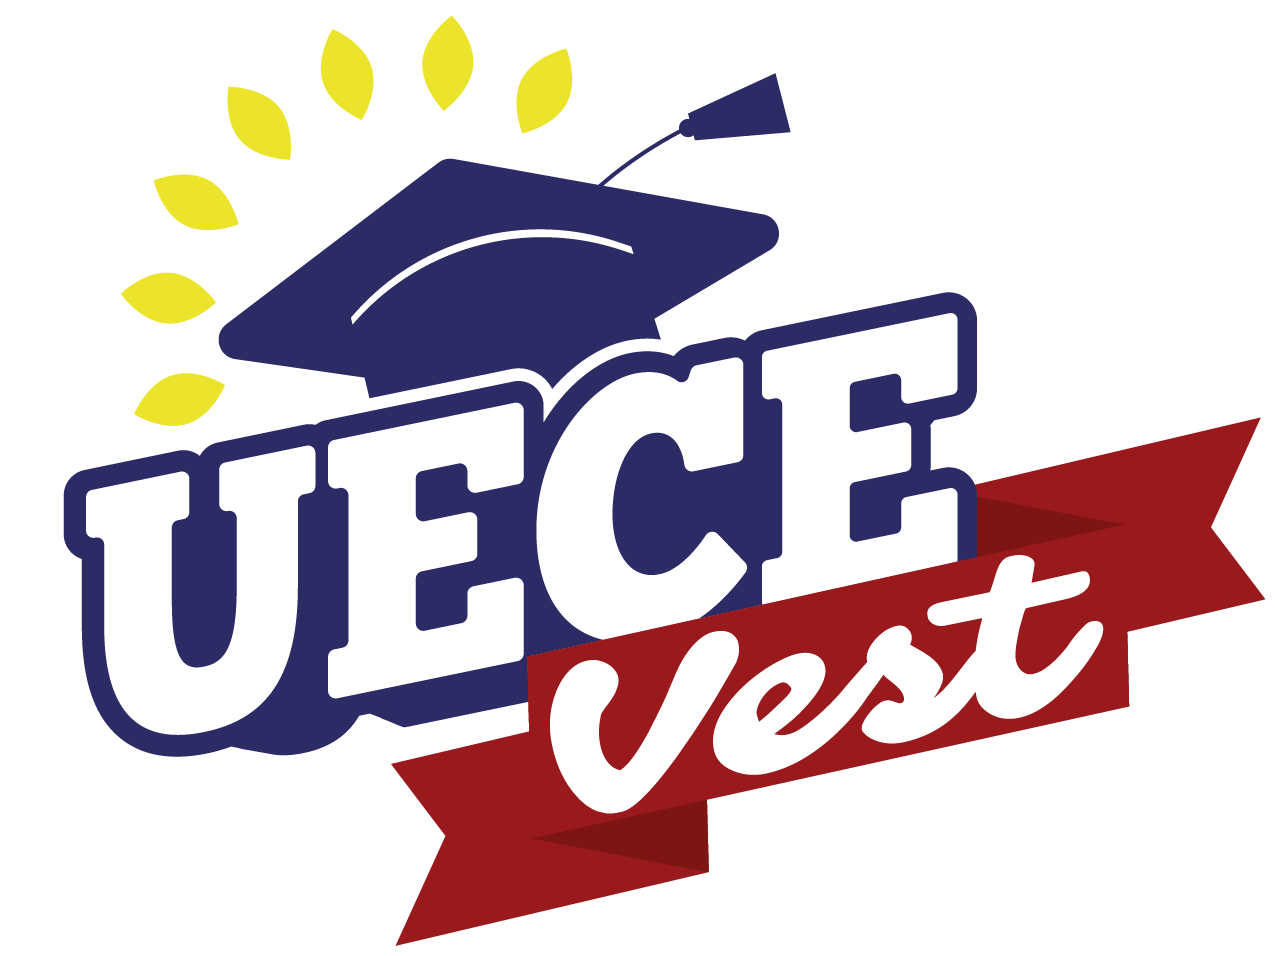 UECEVest oferece 56 vagas gratuitas para estudantes em situação de vulnerabilidade social